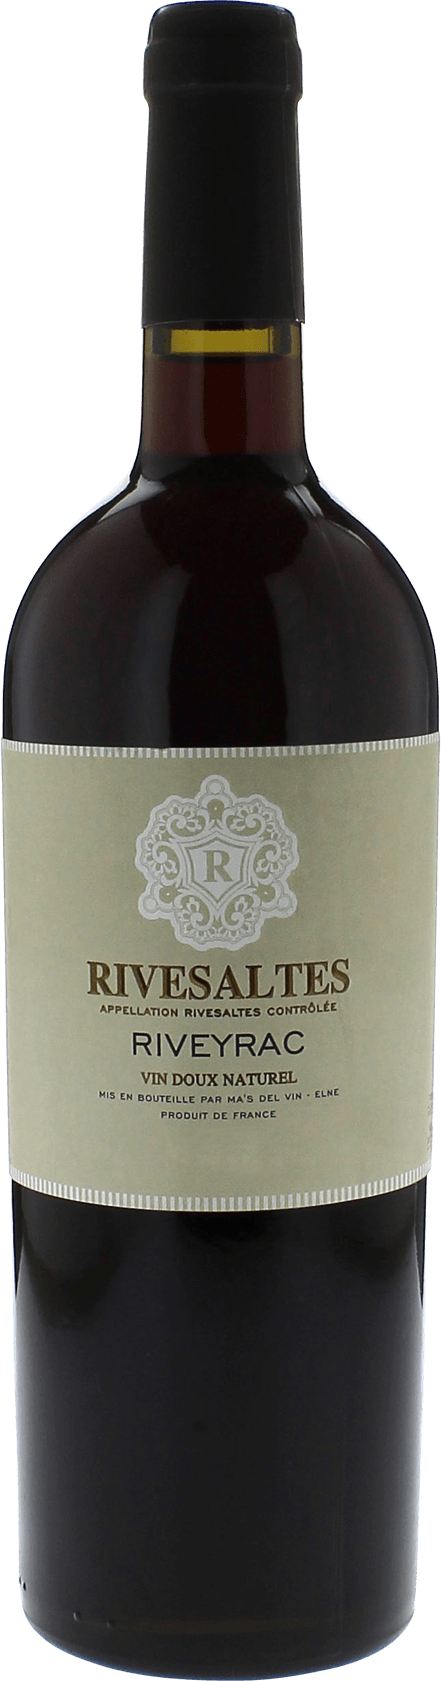 Riveyrac 1965 Vin doux naturel Rivesaltes, Vin doux naturel